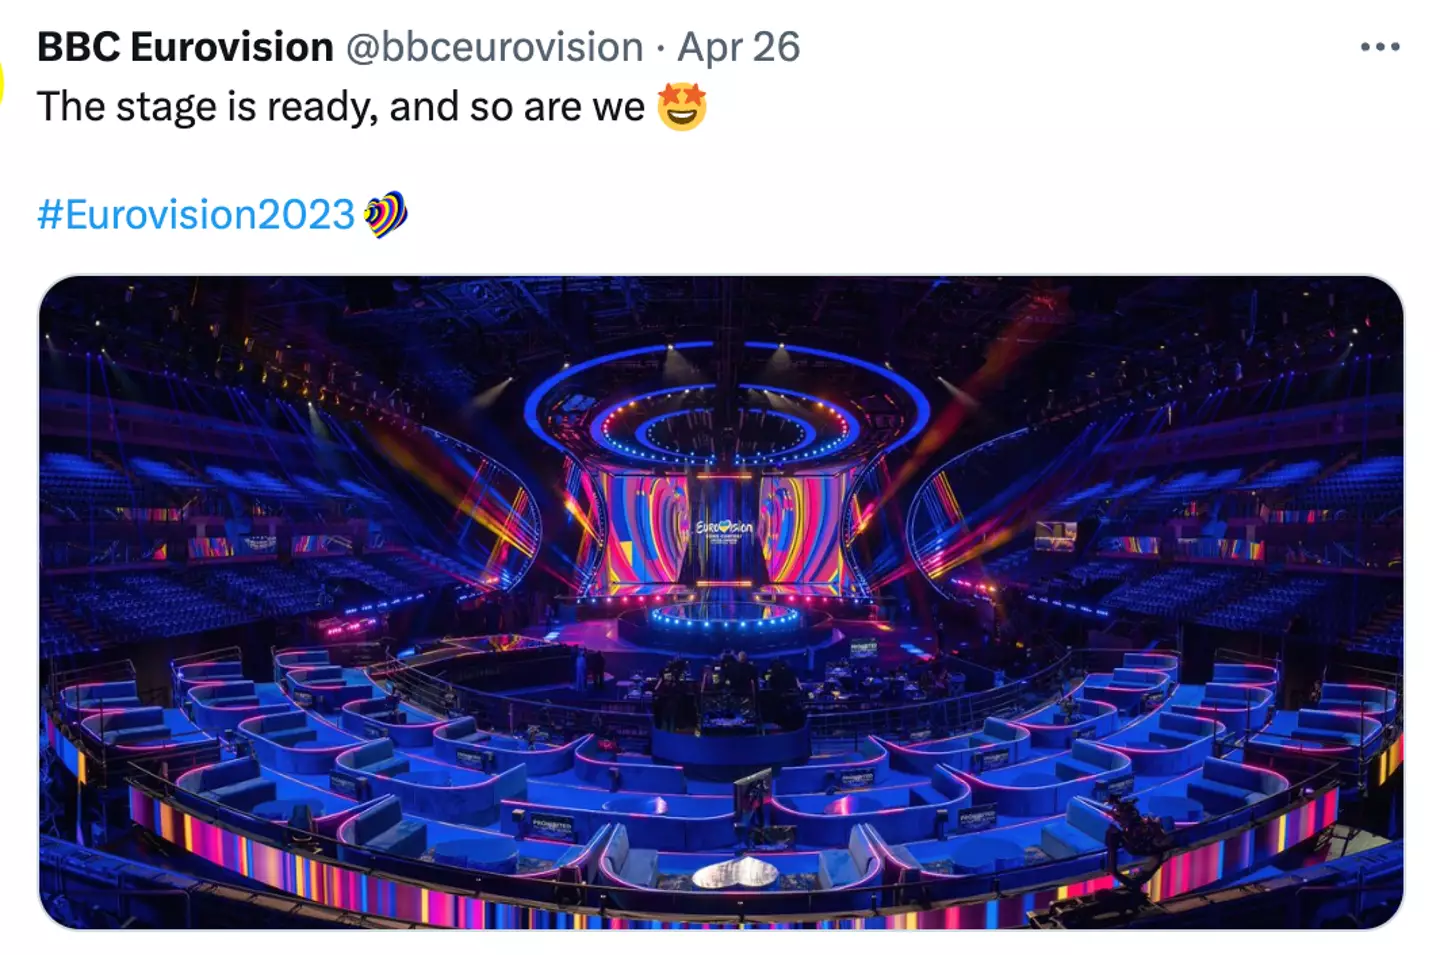 Eurovision is underway.